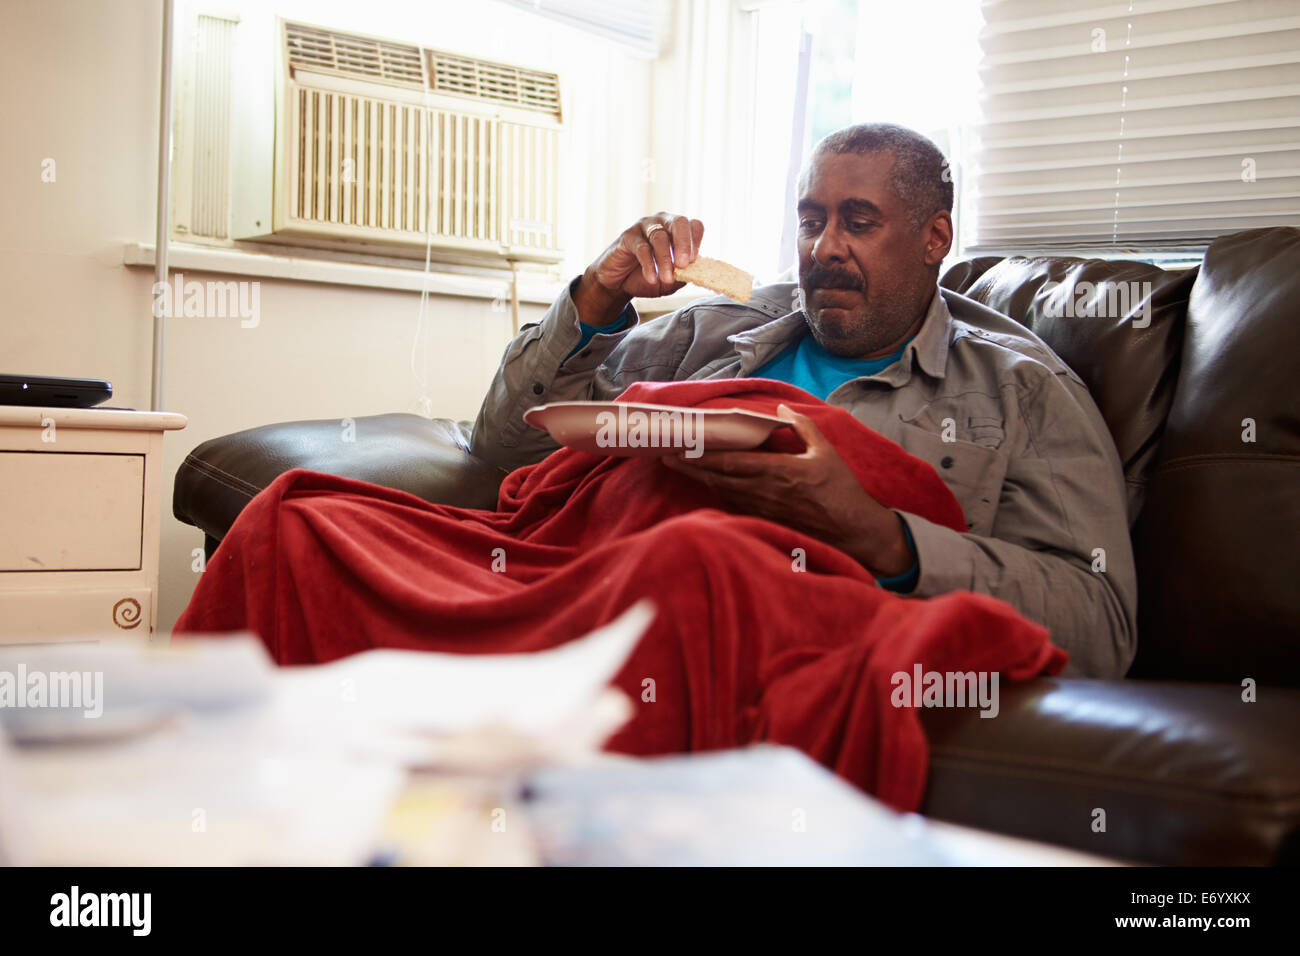 Senior Uomo con dieta povera di mantenere caldo sotto coperta Foto Stock